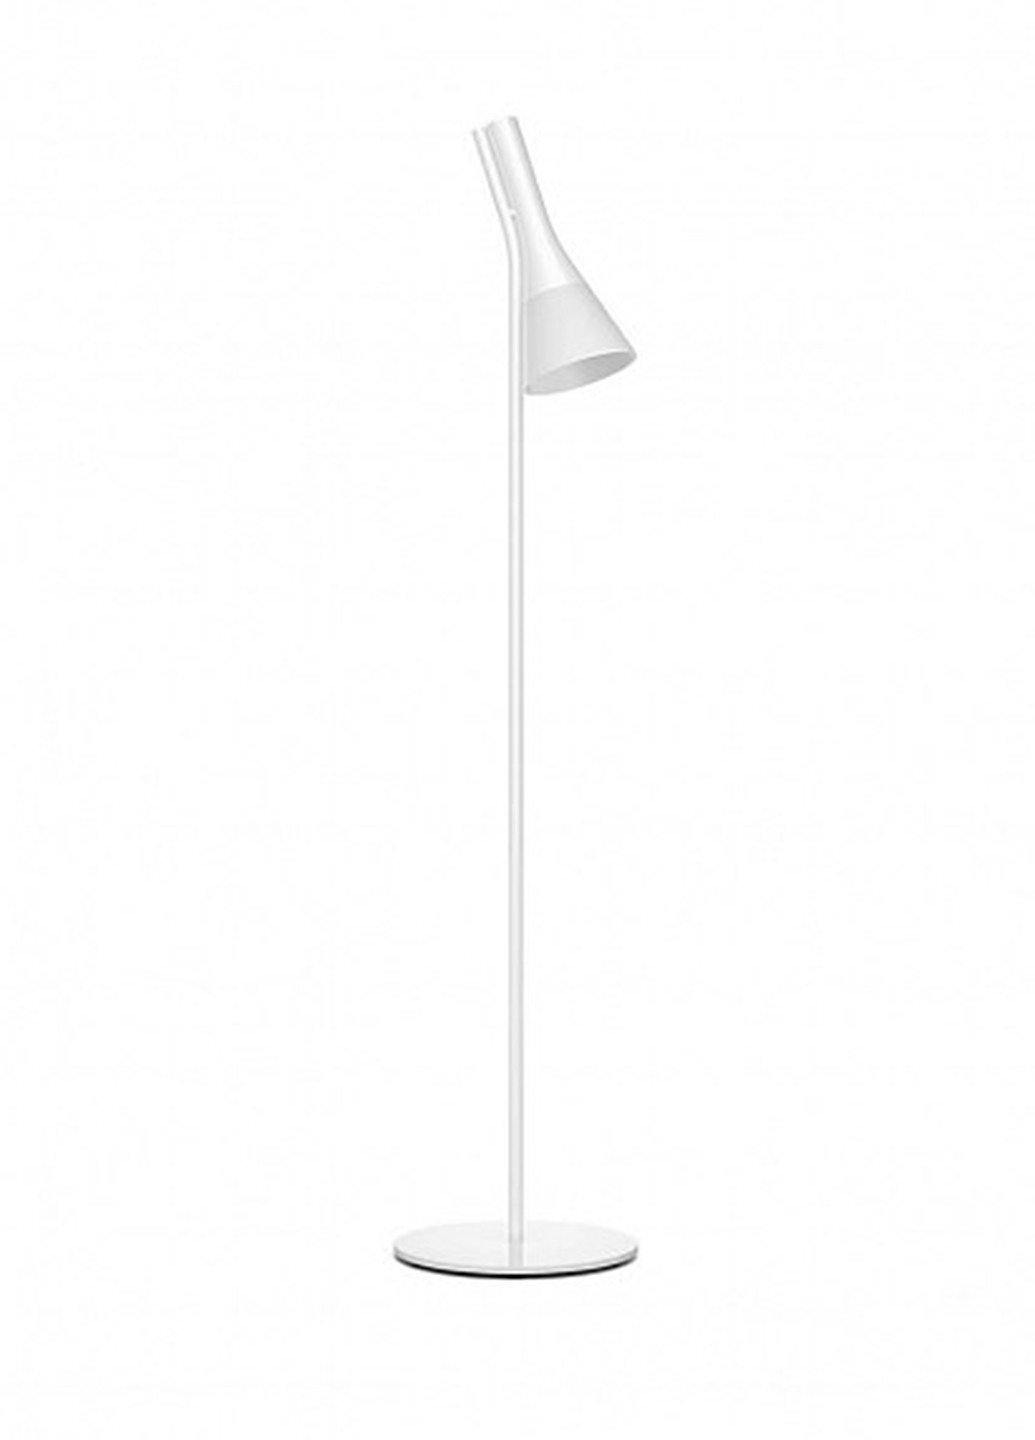 Смарт-светильник Explore Hue floor lamp white 1x9.5W 230V (43004/31/P7) Philips смарт explore hue floor lamp white 1x9.5w 230v (43004/31/p7) (142289809)